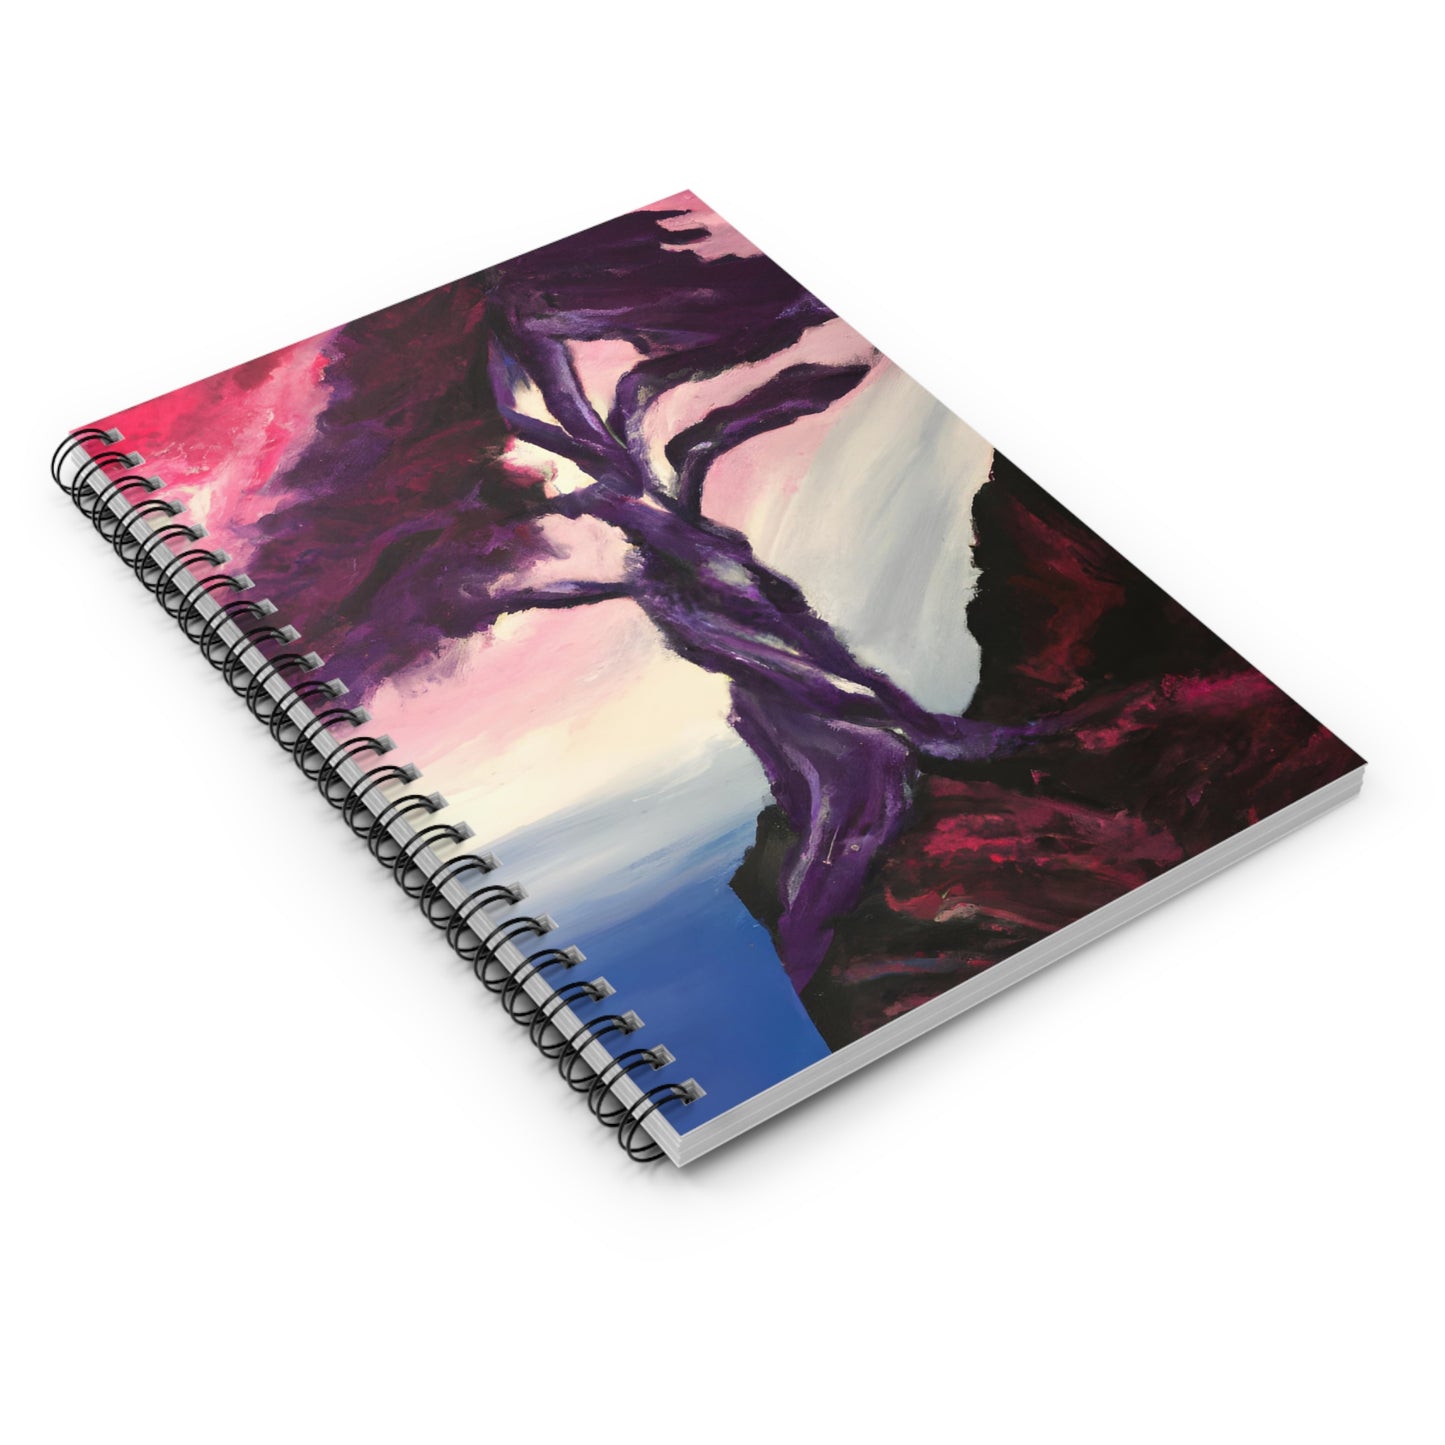 SerenitySurge Notebook Journal